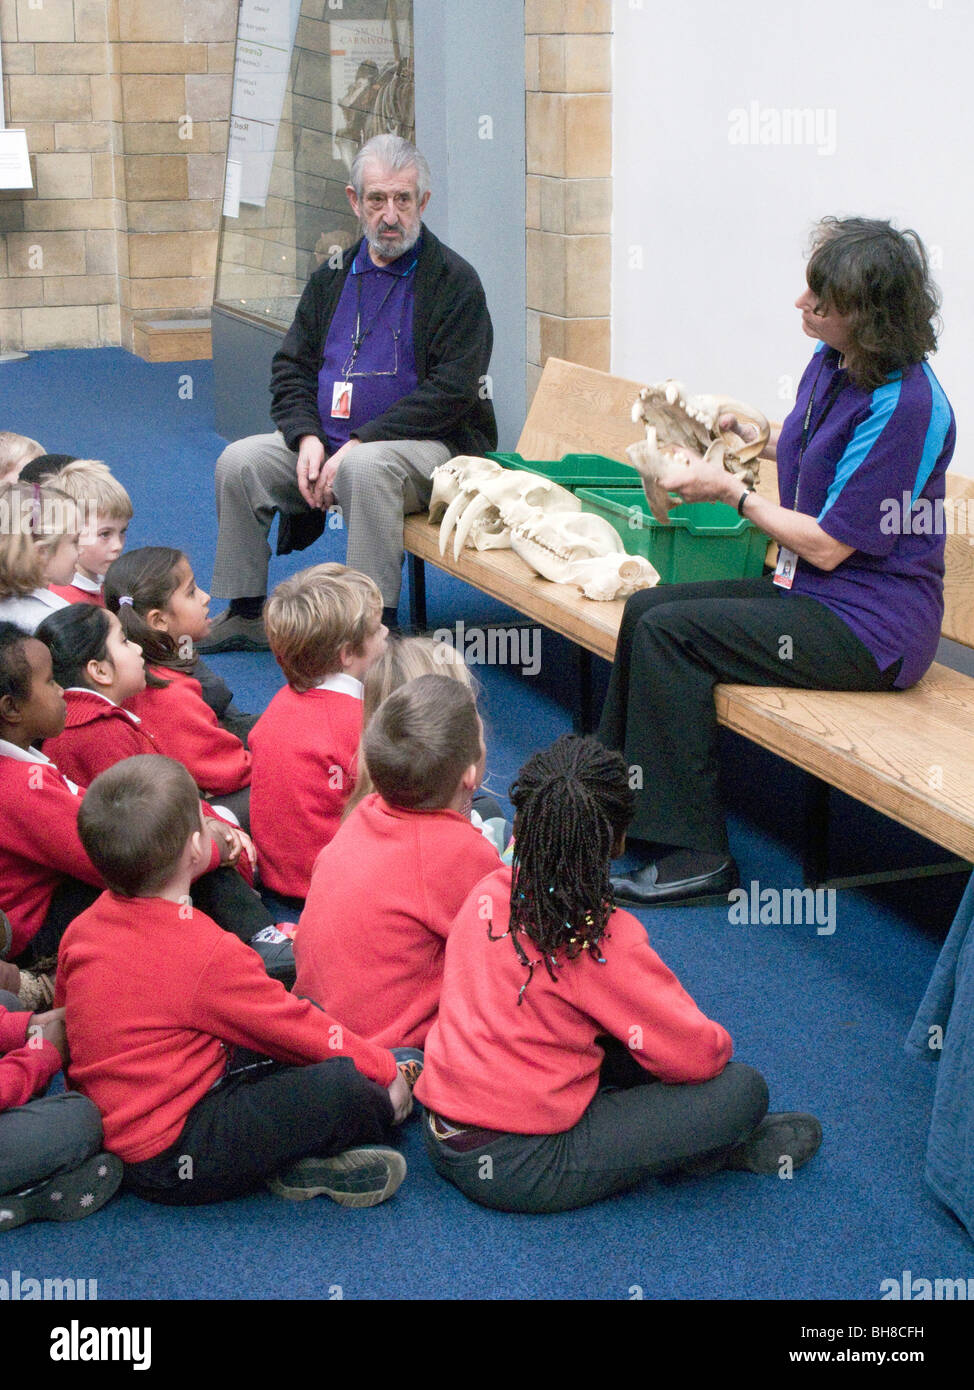 Les enfants de l'école britannique.La visite du Natural History Museum de Londres Banque D'Images